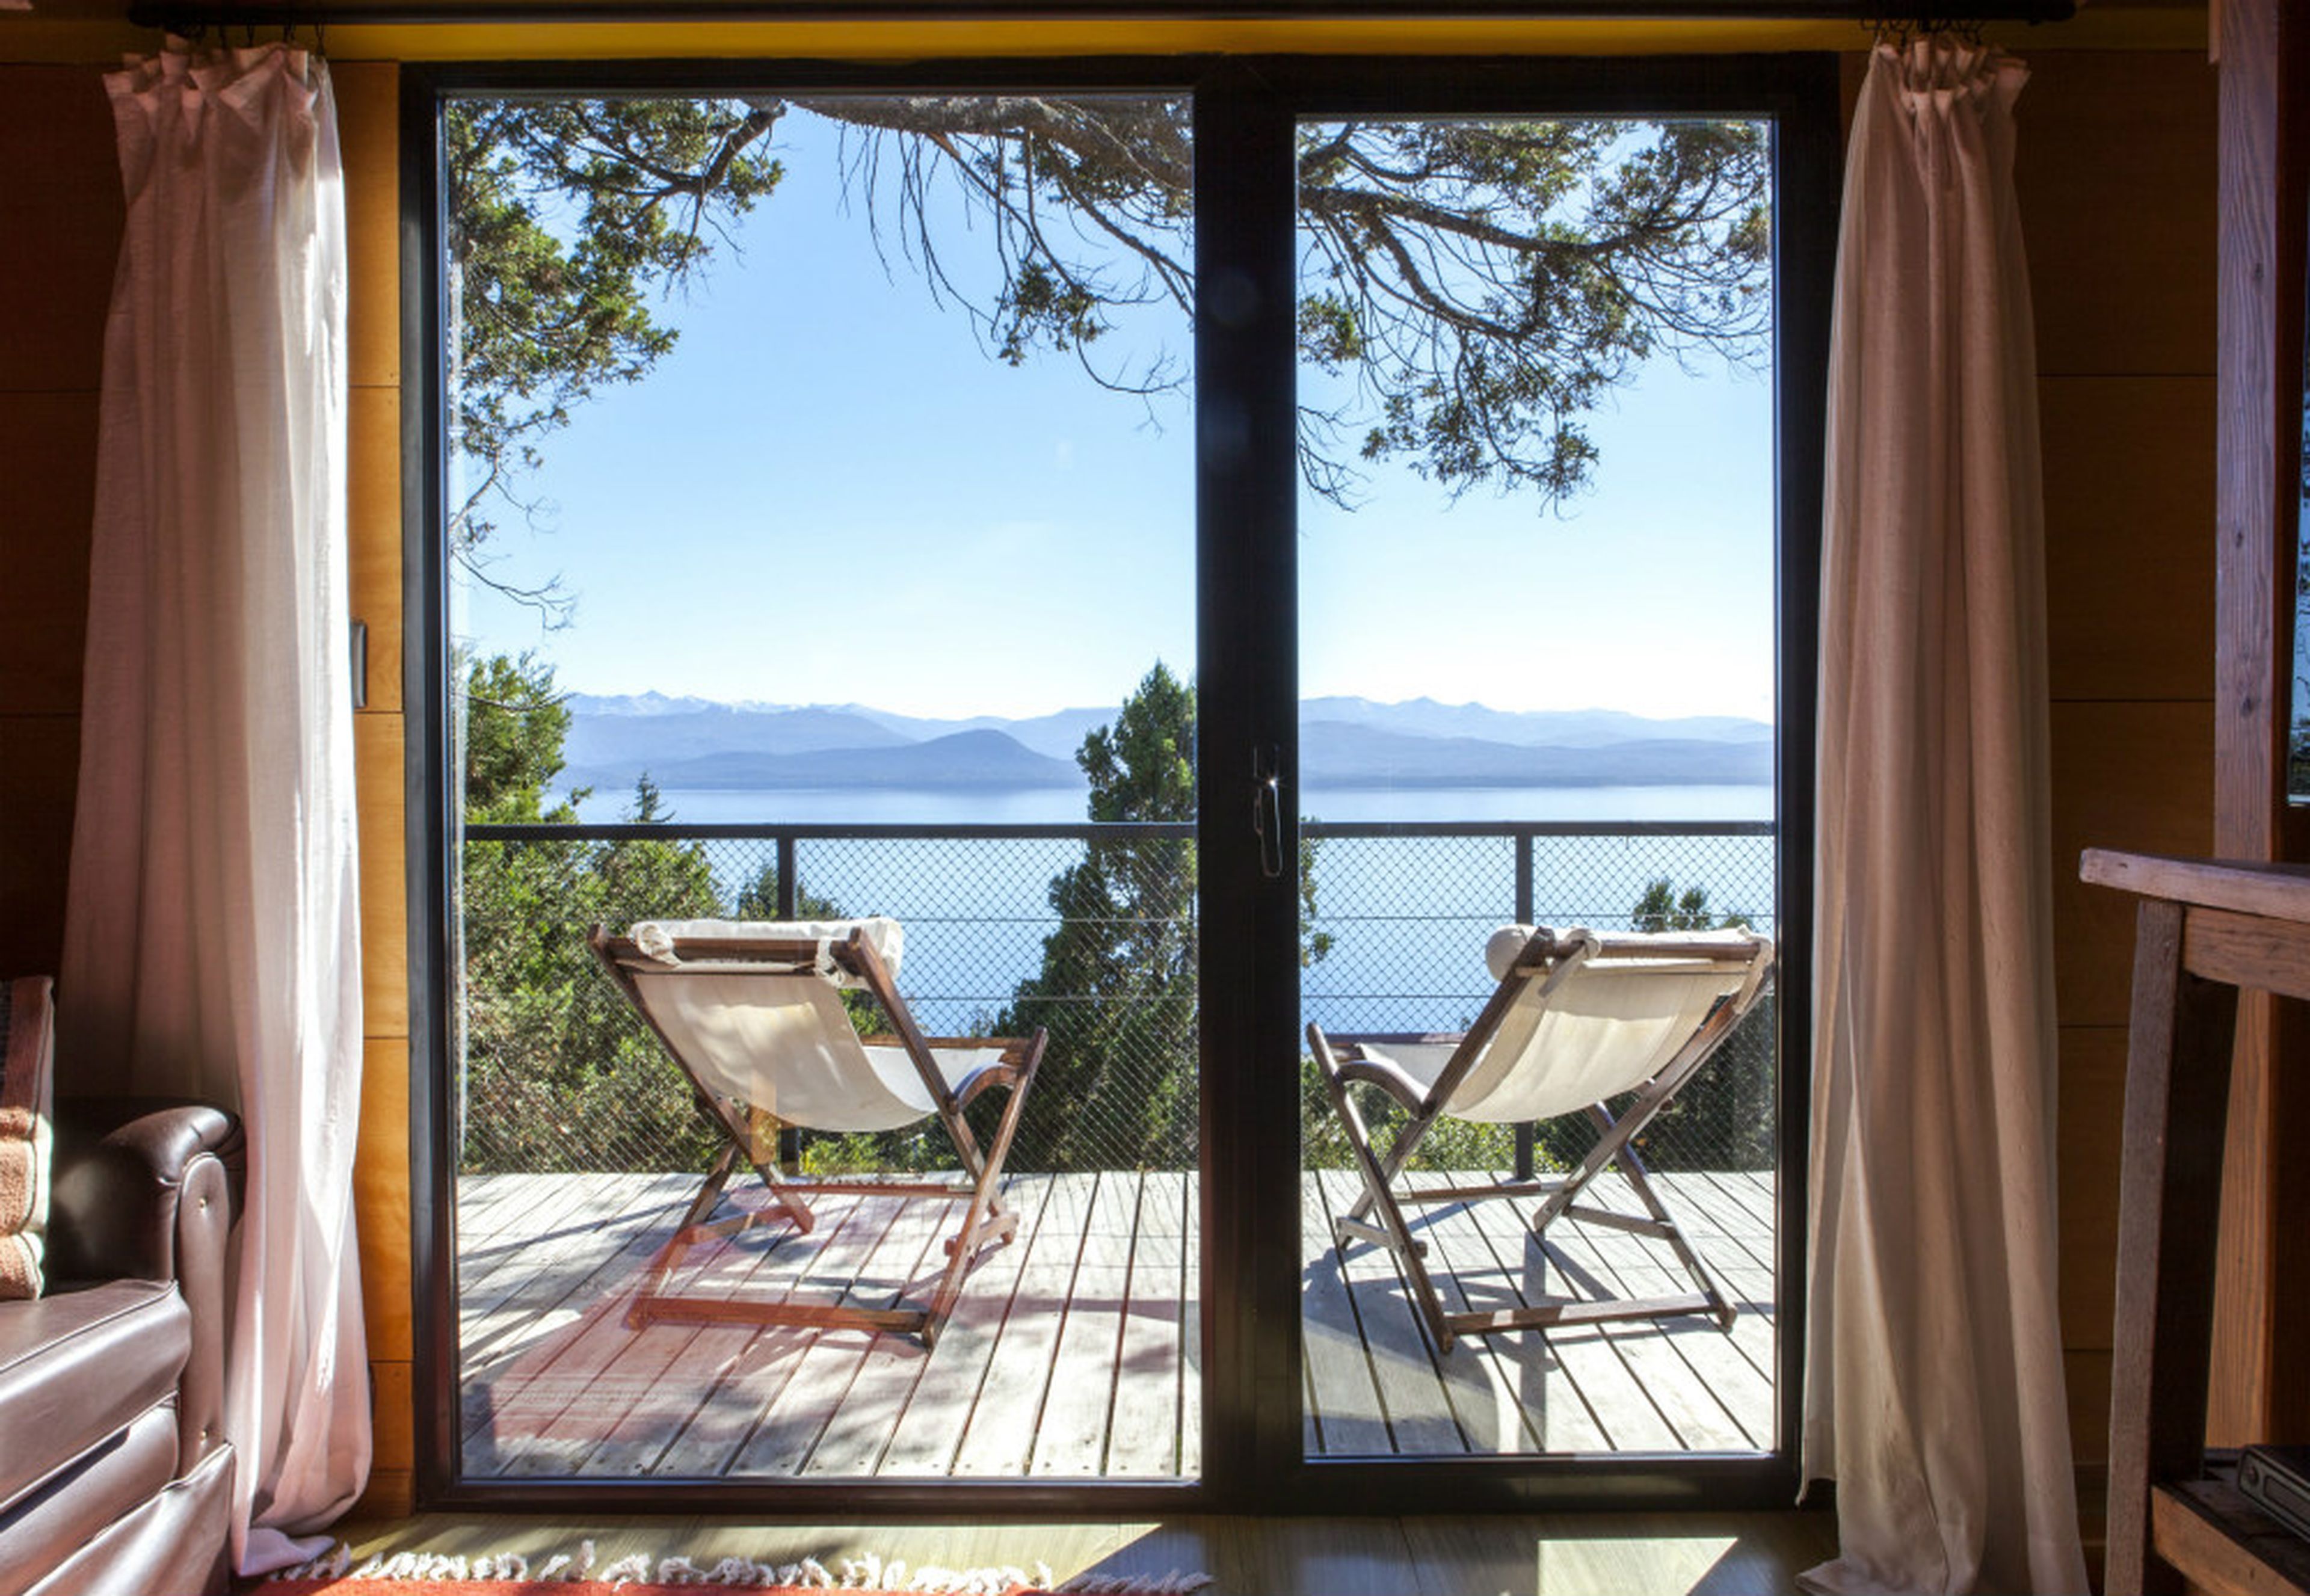 Vistas a un lago desde una casa de alquiler de Airbnb vivienda